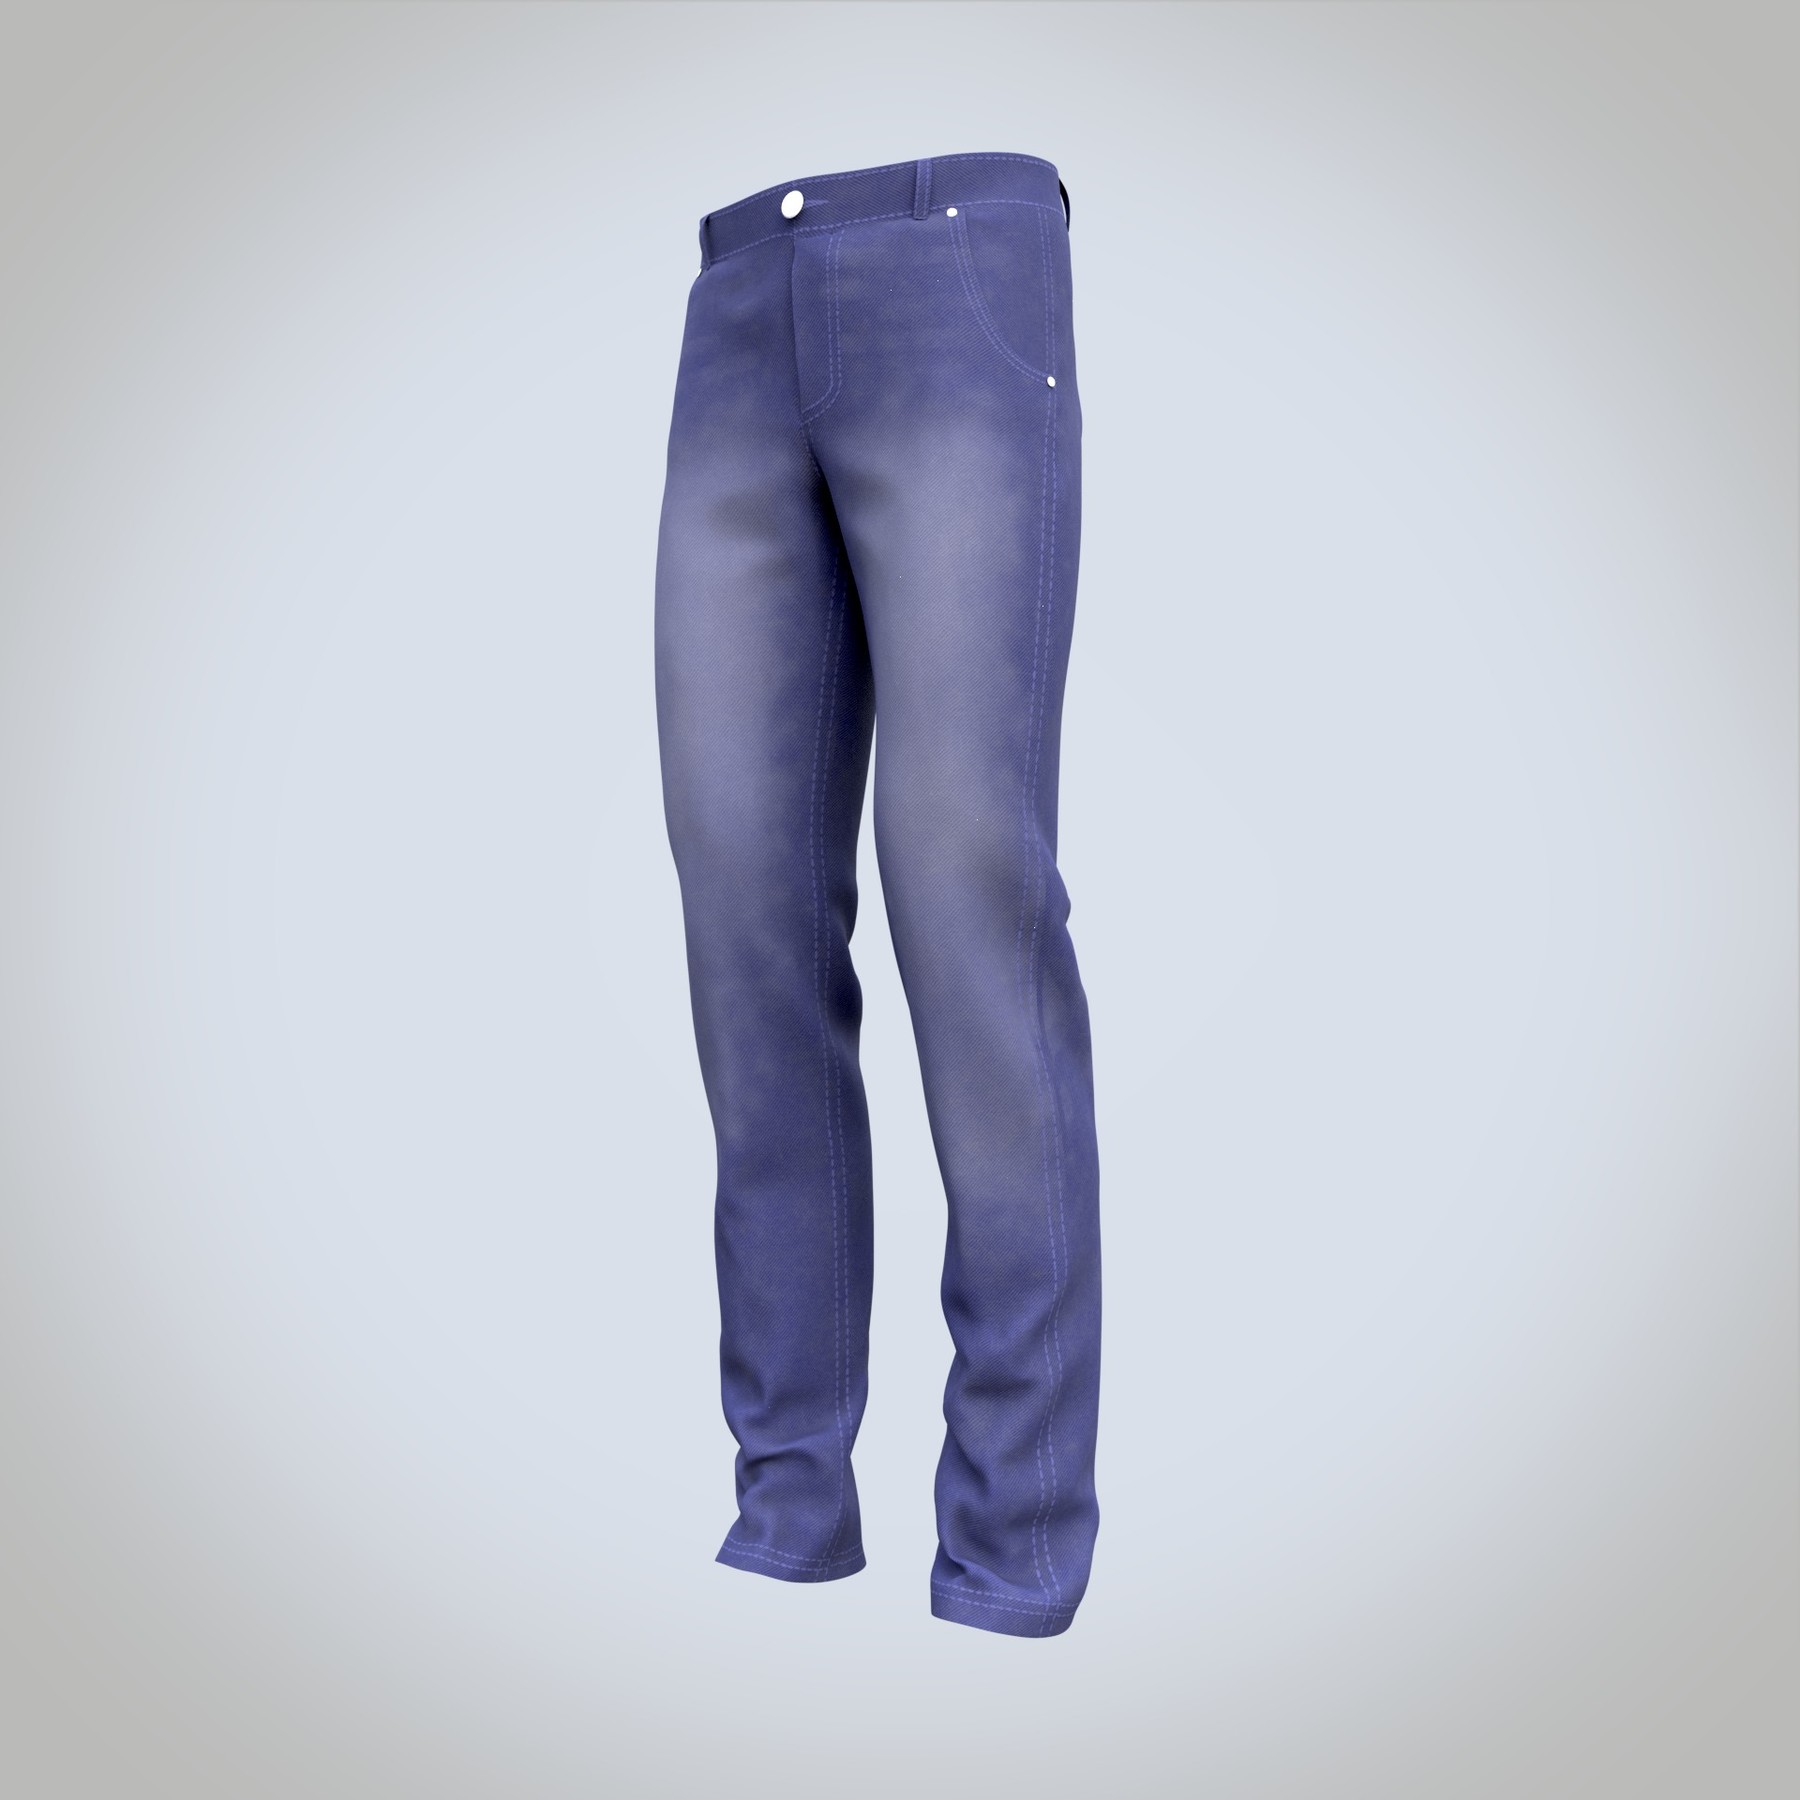 ArtStation - 3D male jeans denim pants | Resources